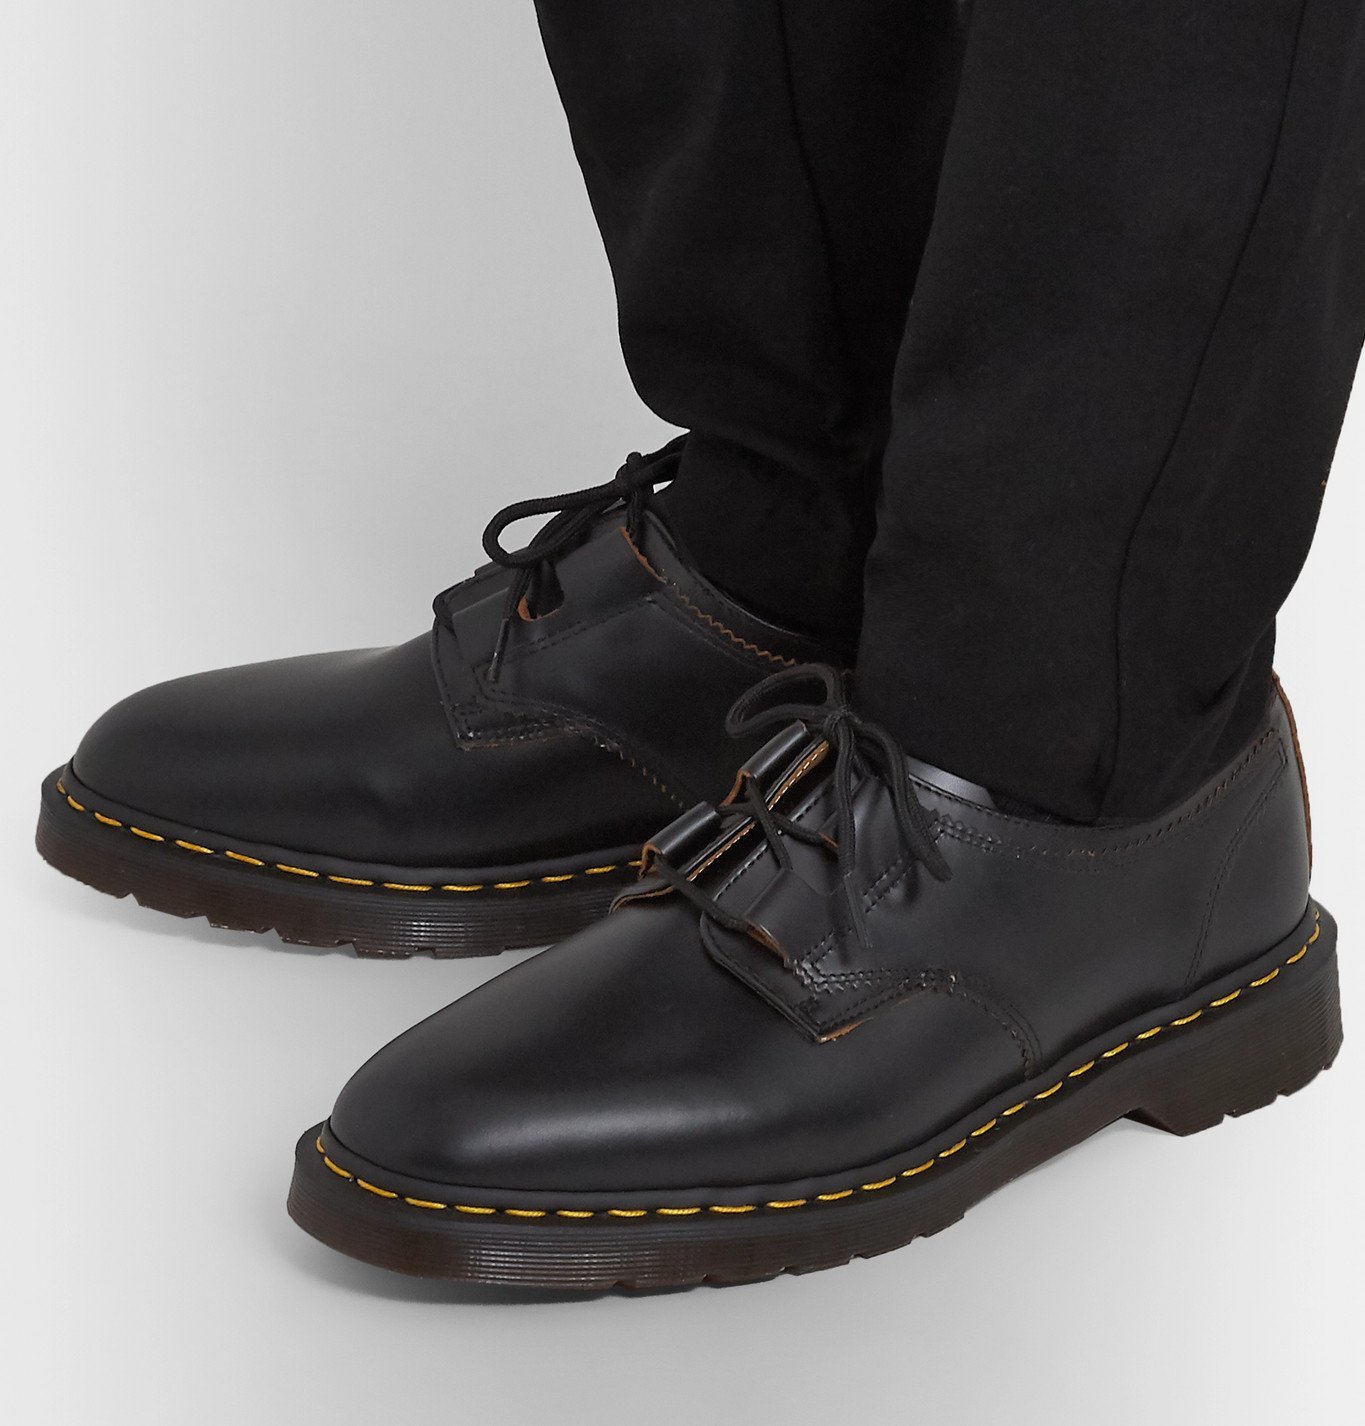 Dr. Martens - 1461 Ghillie Leather Derby Shoes - Black Dr. Martens